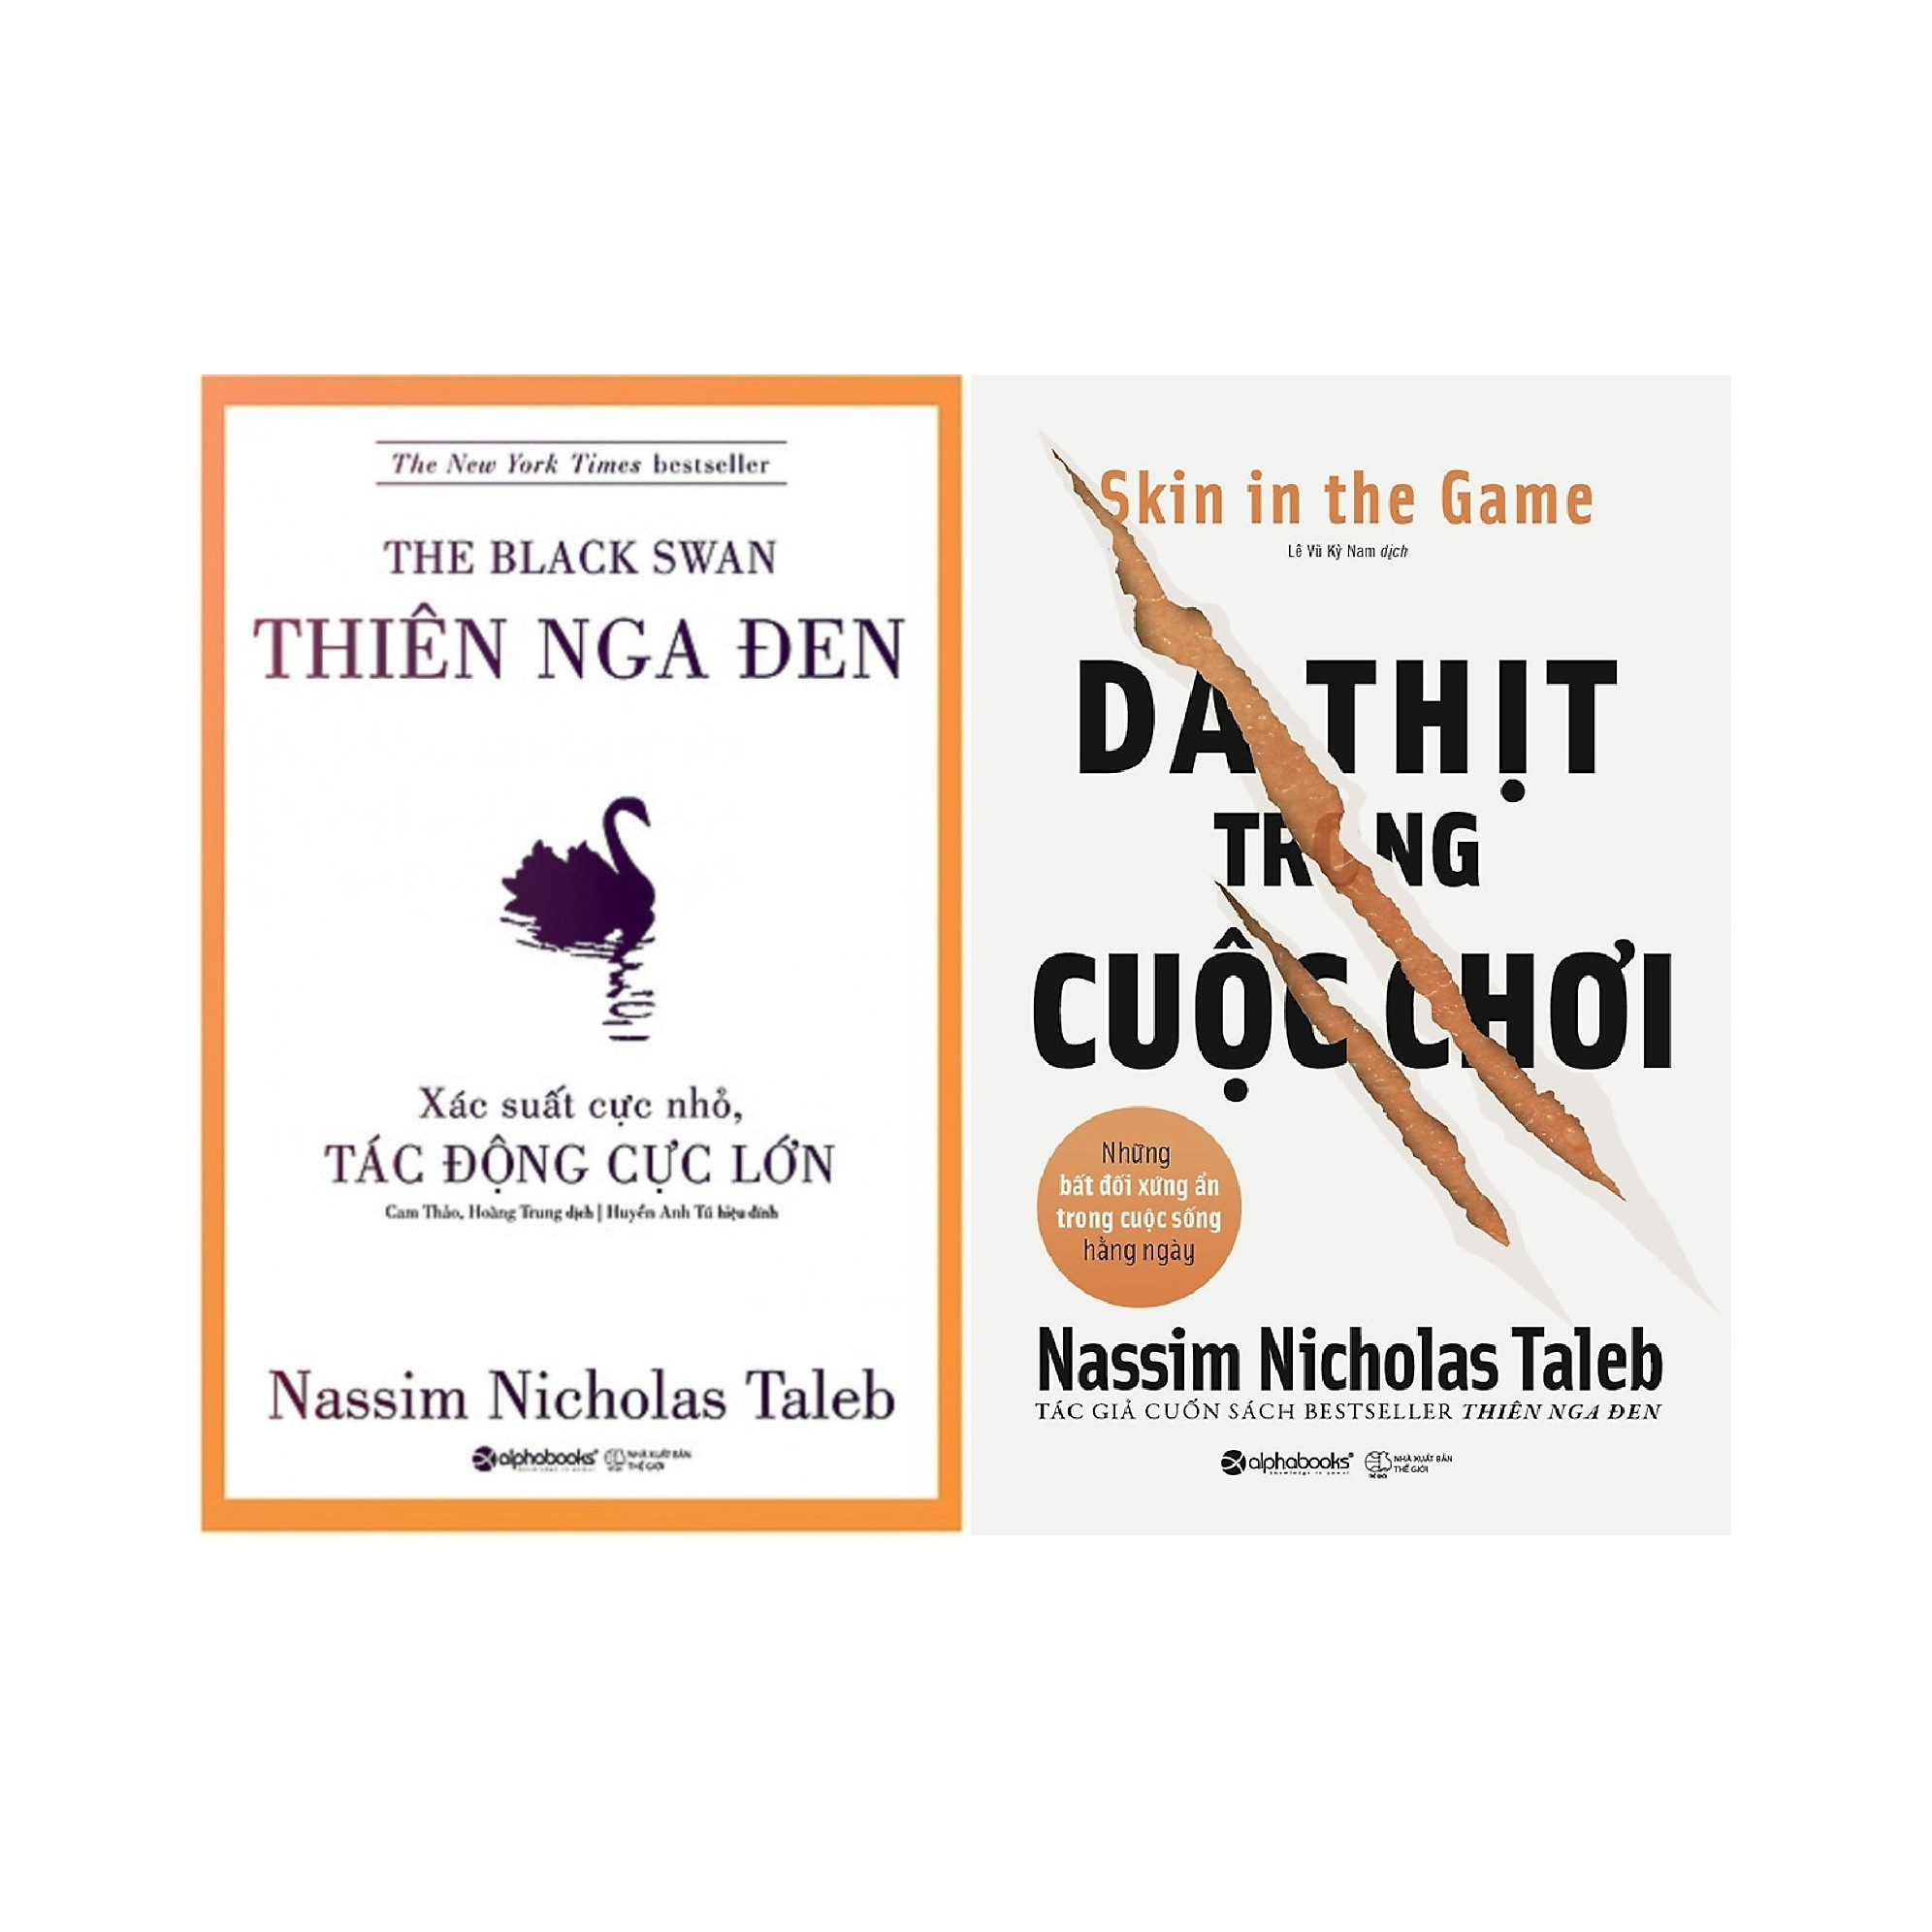 Trọn Bộ 2 Cuốn Sách Của Tác Giả Nassim Nicholas Taleb ( Thiên Nga Đen + Da Thịt Trong Cuộc Chơi ) tặng kèm bookmark Sáng Tạo